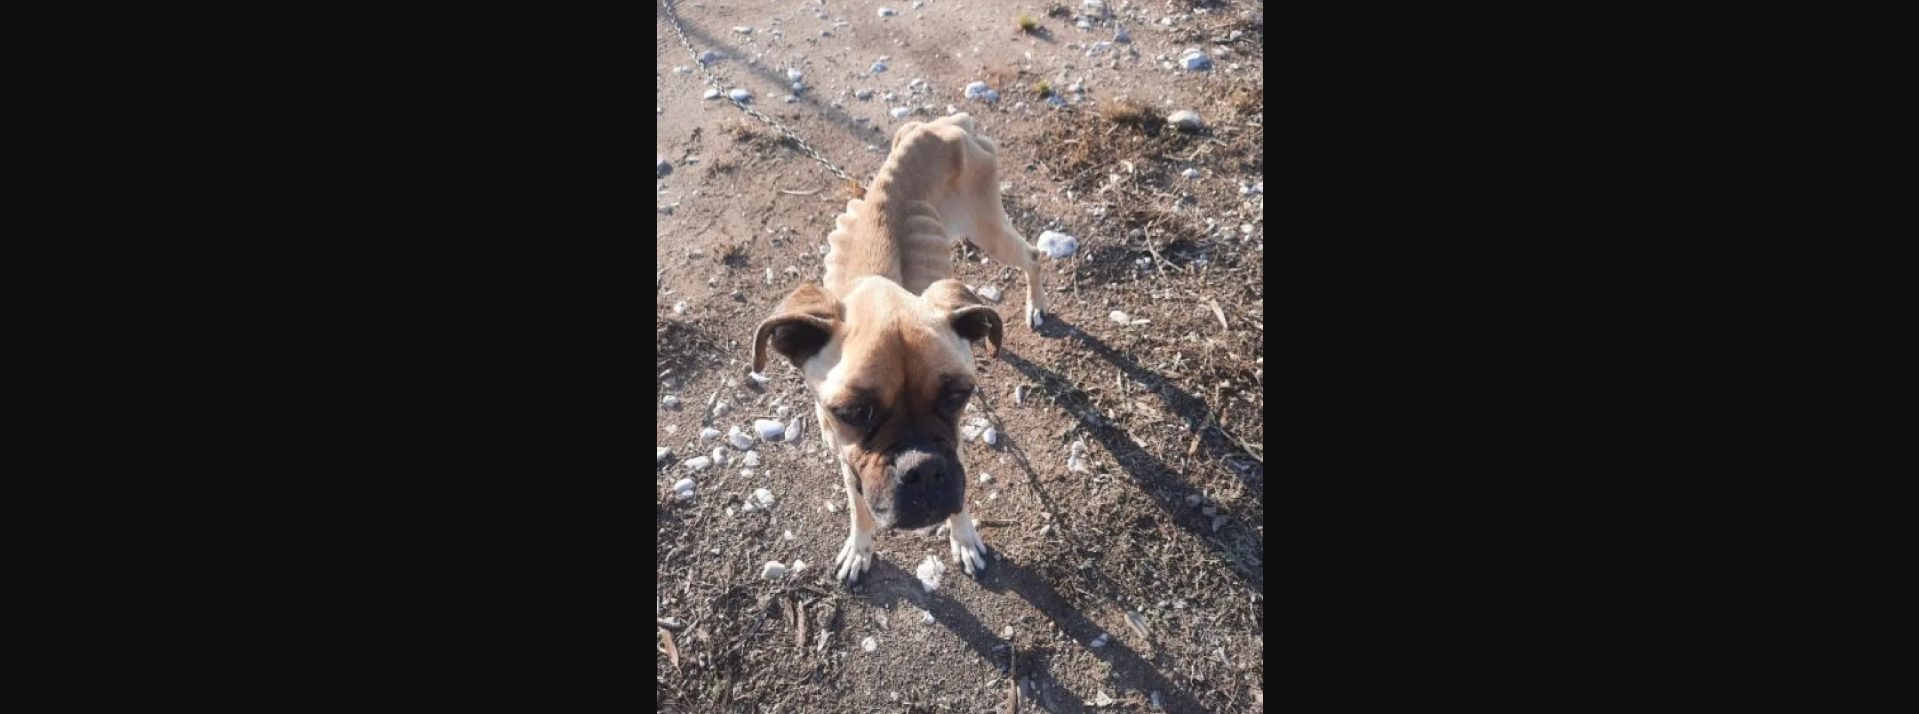 Ηλεία: Σκύλος βρέθηκε σκελετωμένος και αλυσοδεμένος (φωτο)